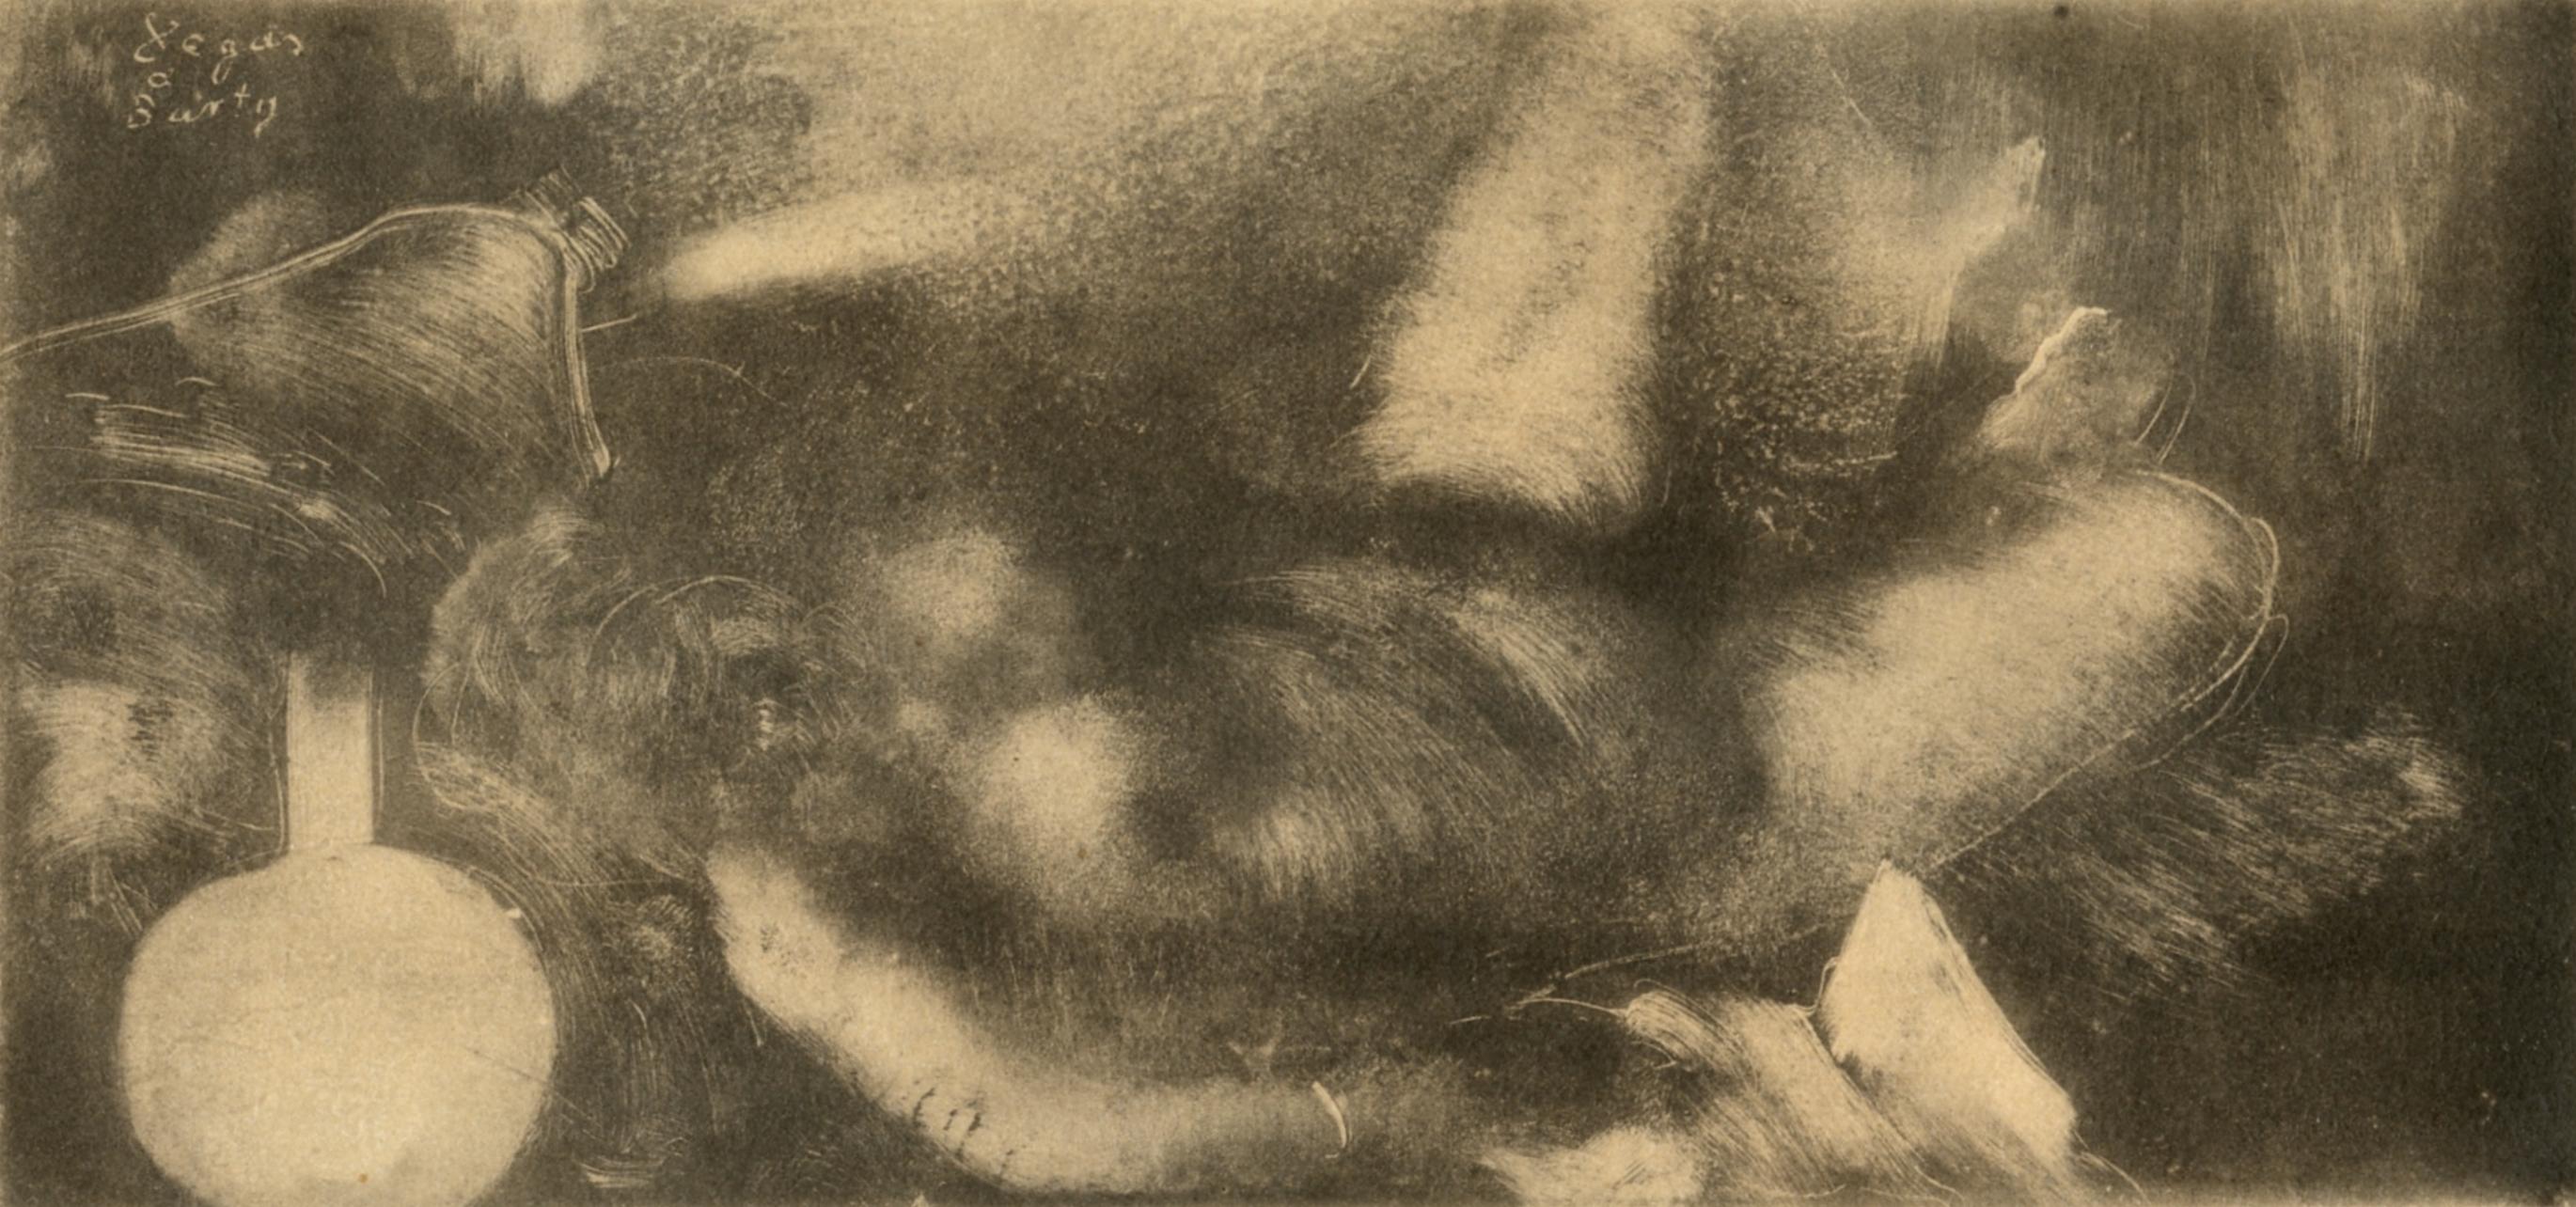 Degas, Nu couche, Les Monotypes (after)